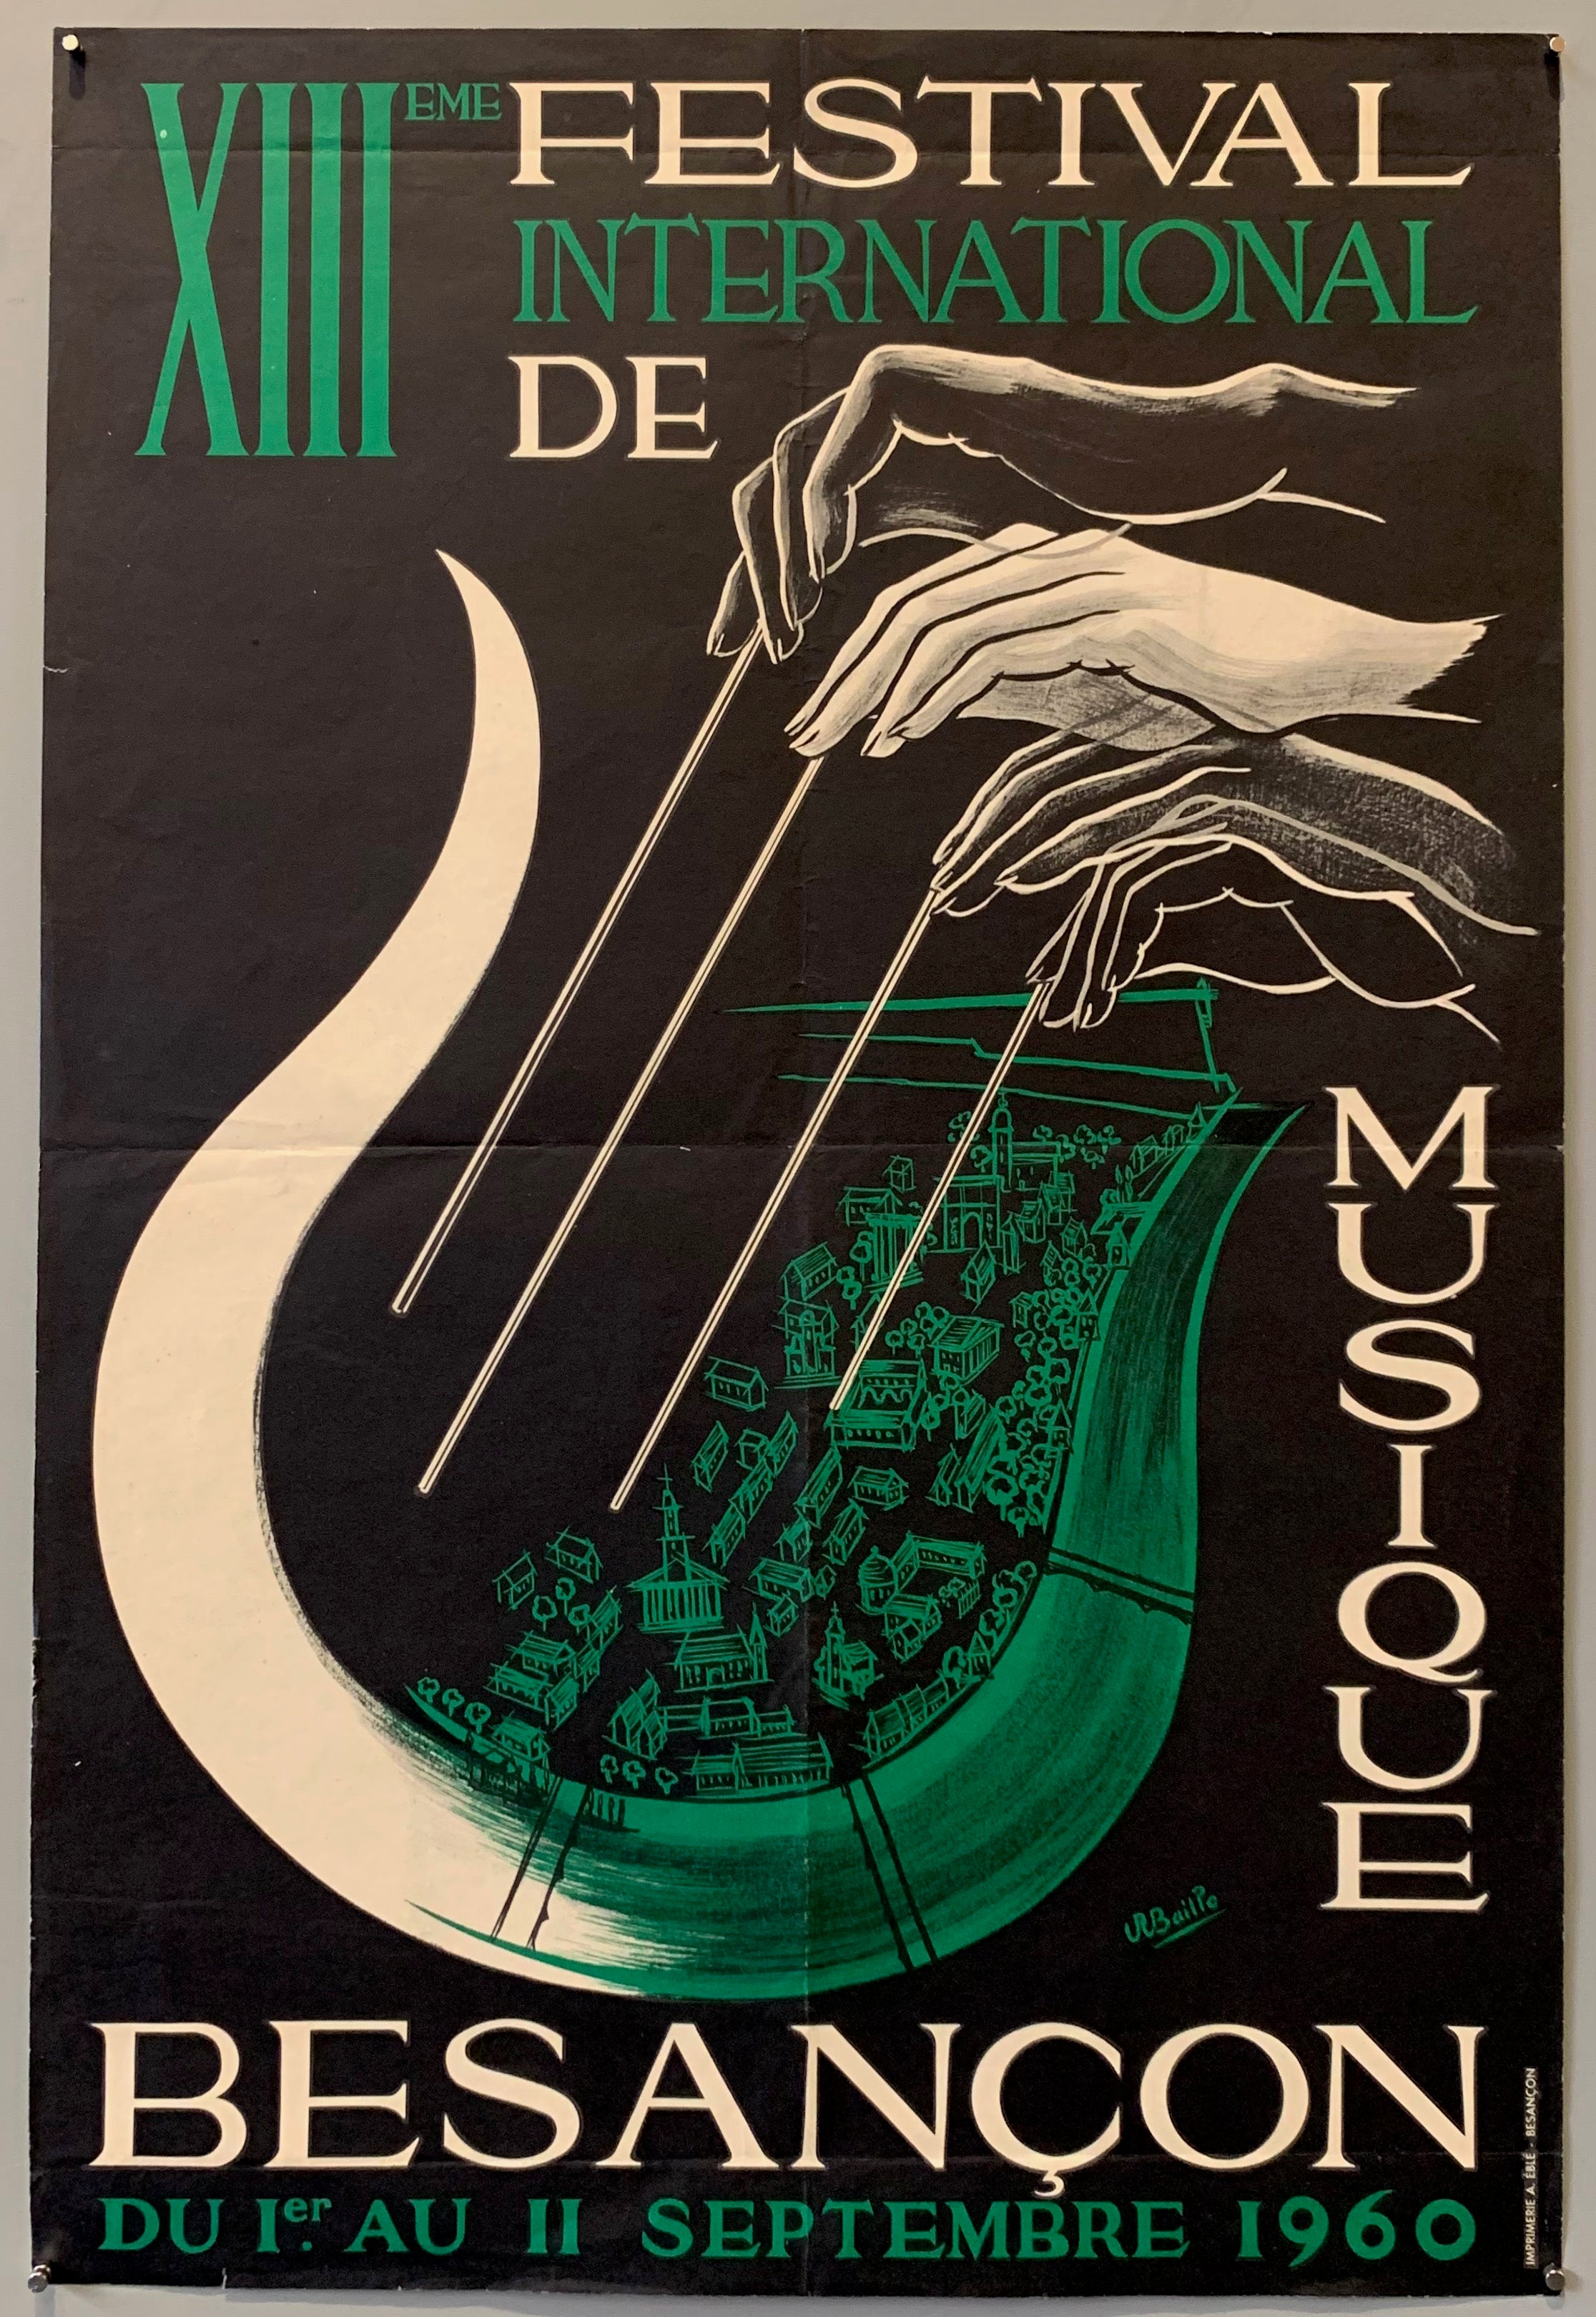 Festival International de Musique Besançon Poster Poster Museum